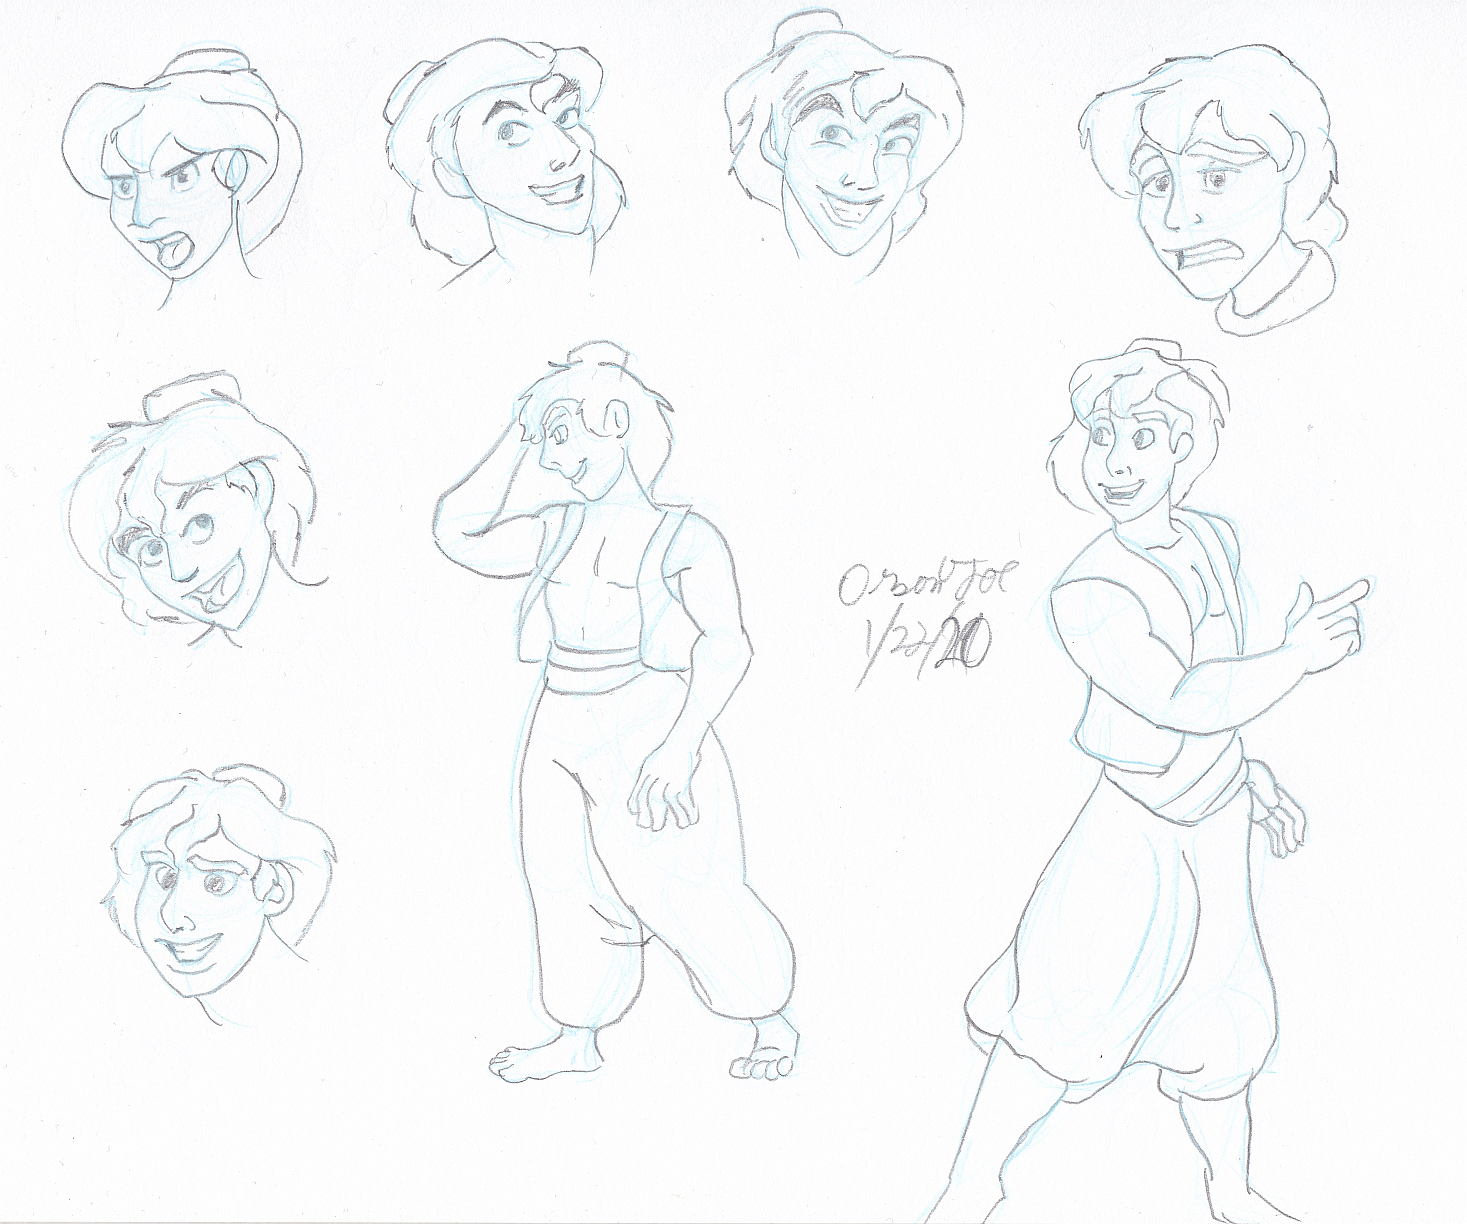 Aladdin  ALADDIN 1992  Arte conceitual da disney Personagens disney  Esboços de personagens